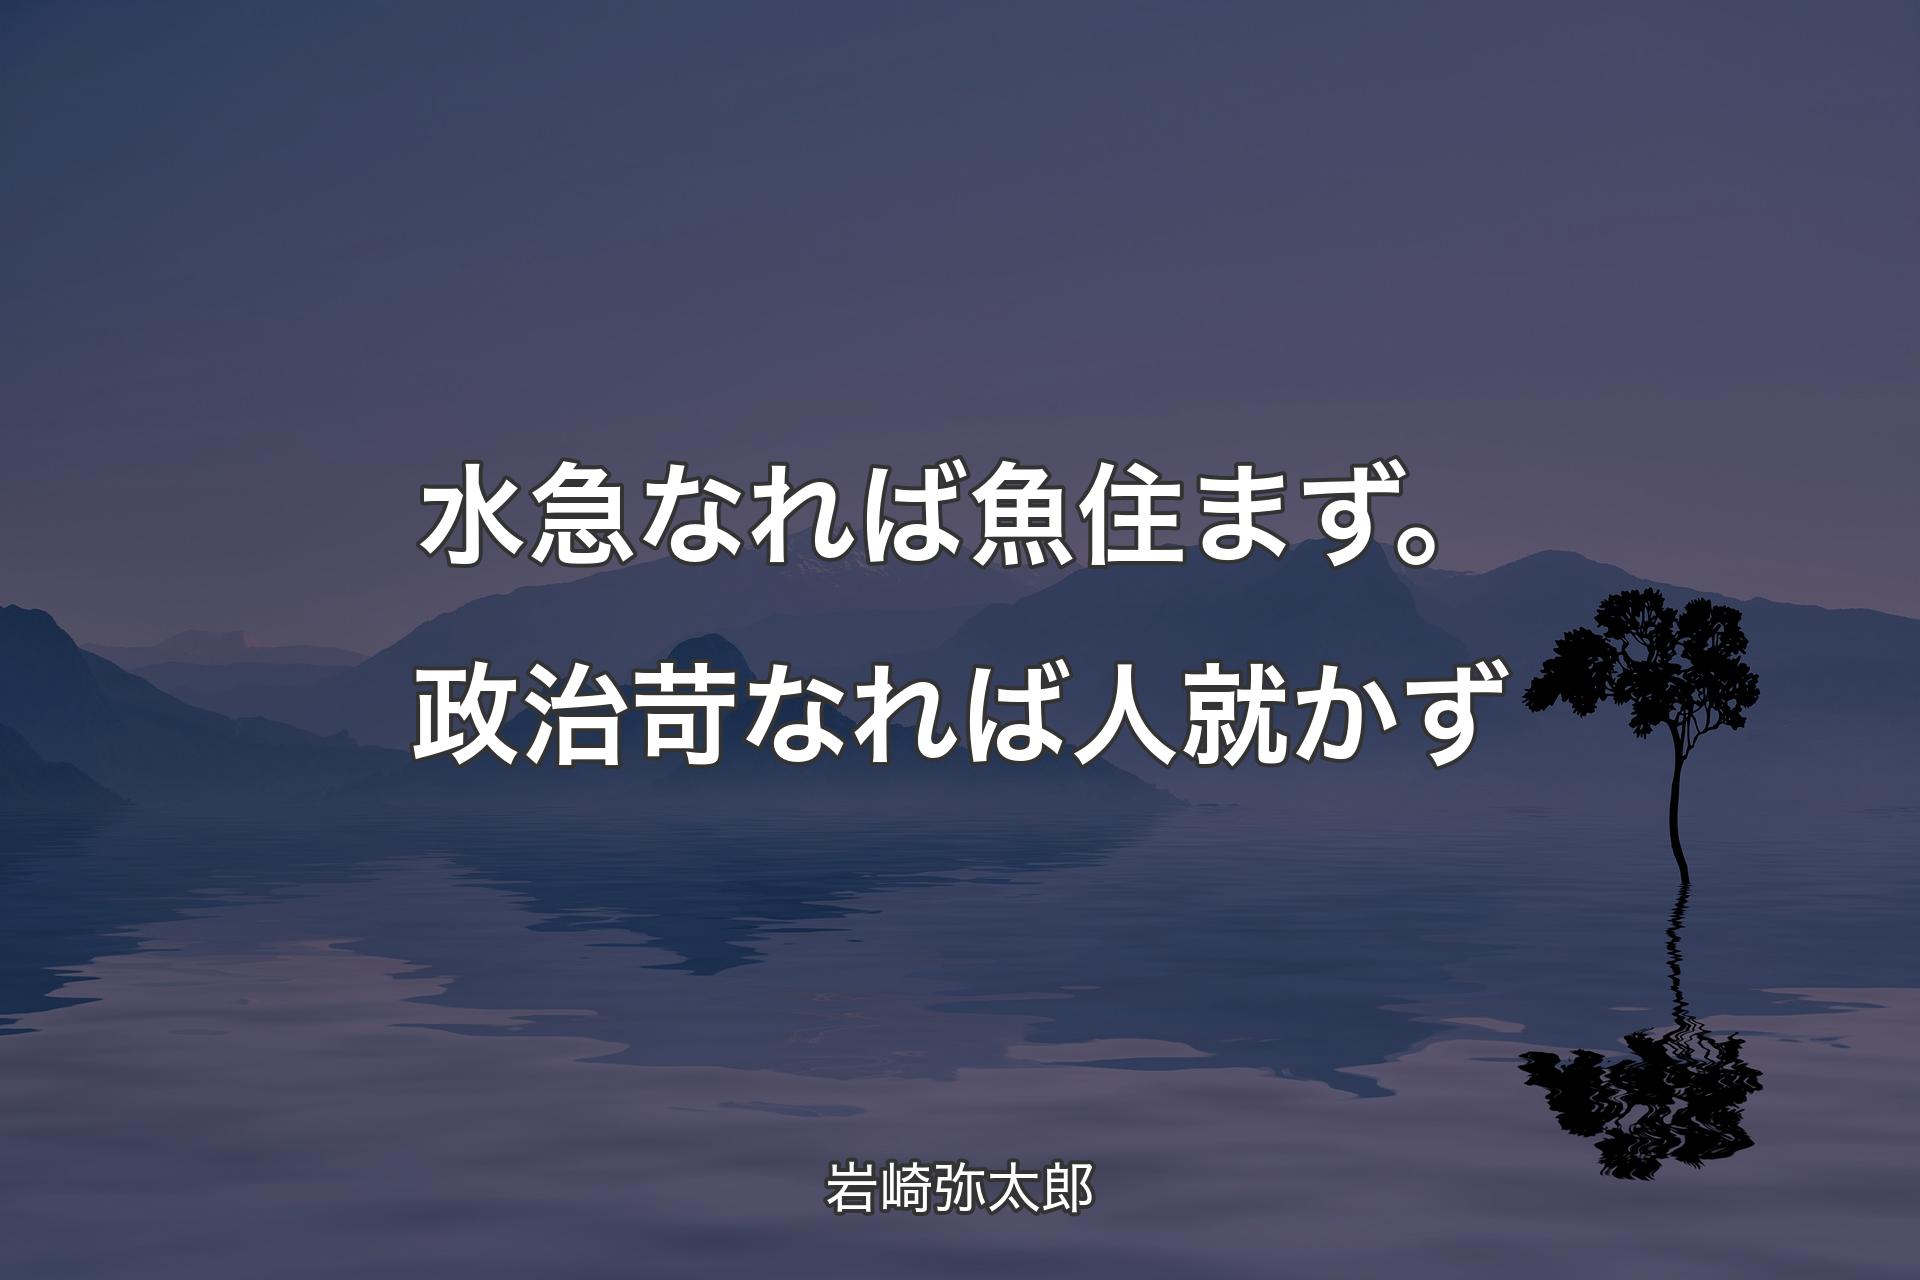 【背景4】水急なれば魚住まず。政治苛なれば人就かず - 岩崎弥太郎